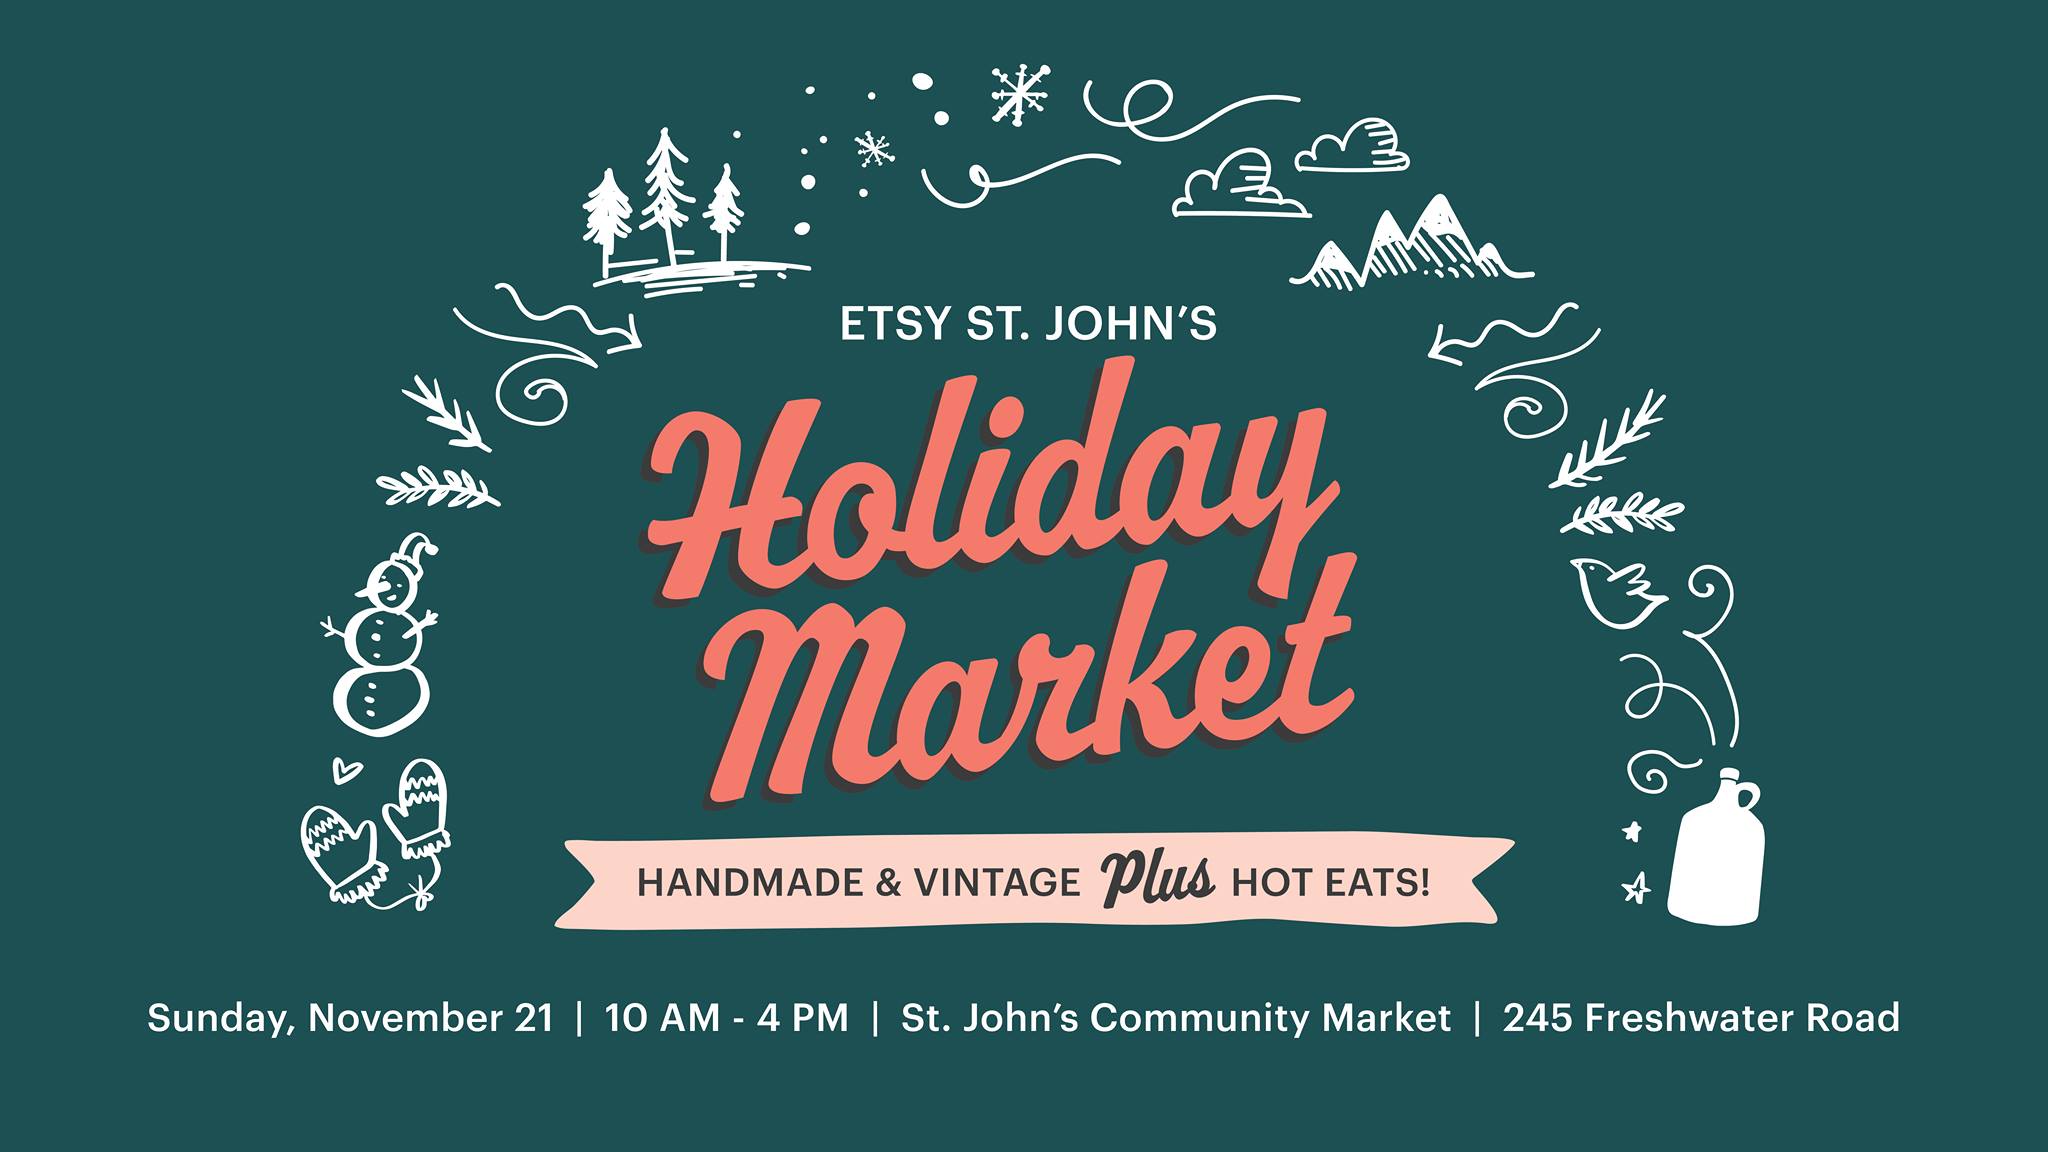 Holiday Market Etsy St. John's